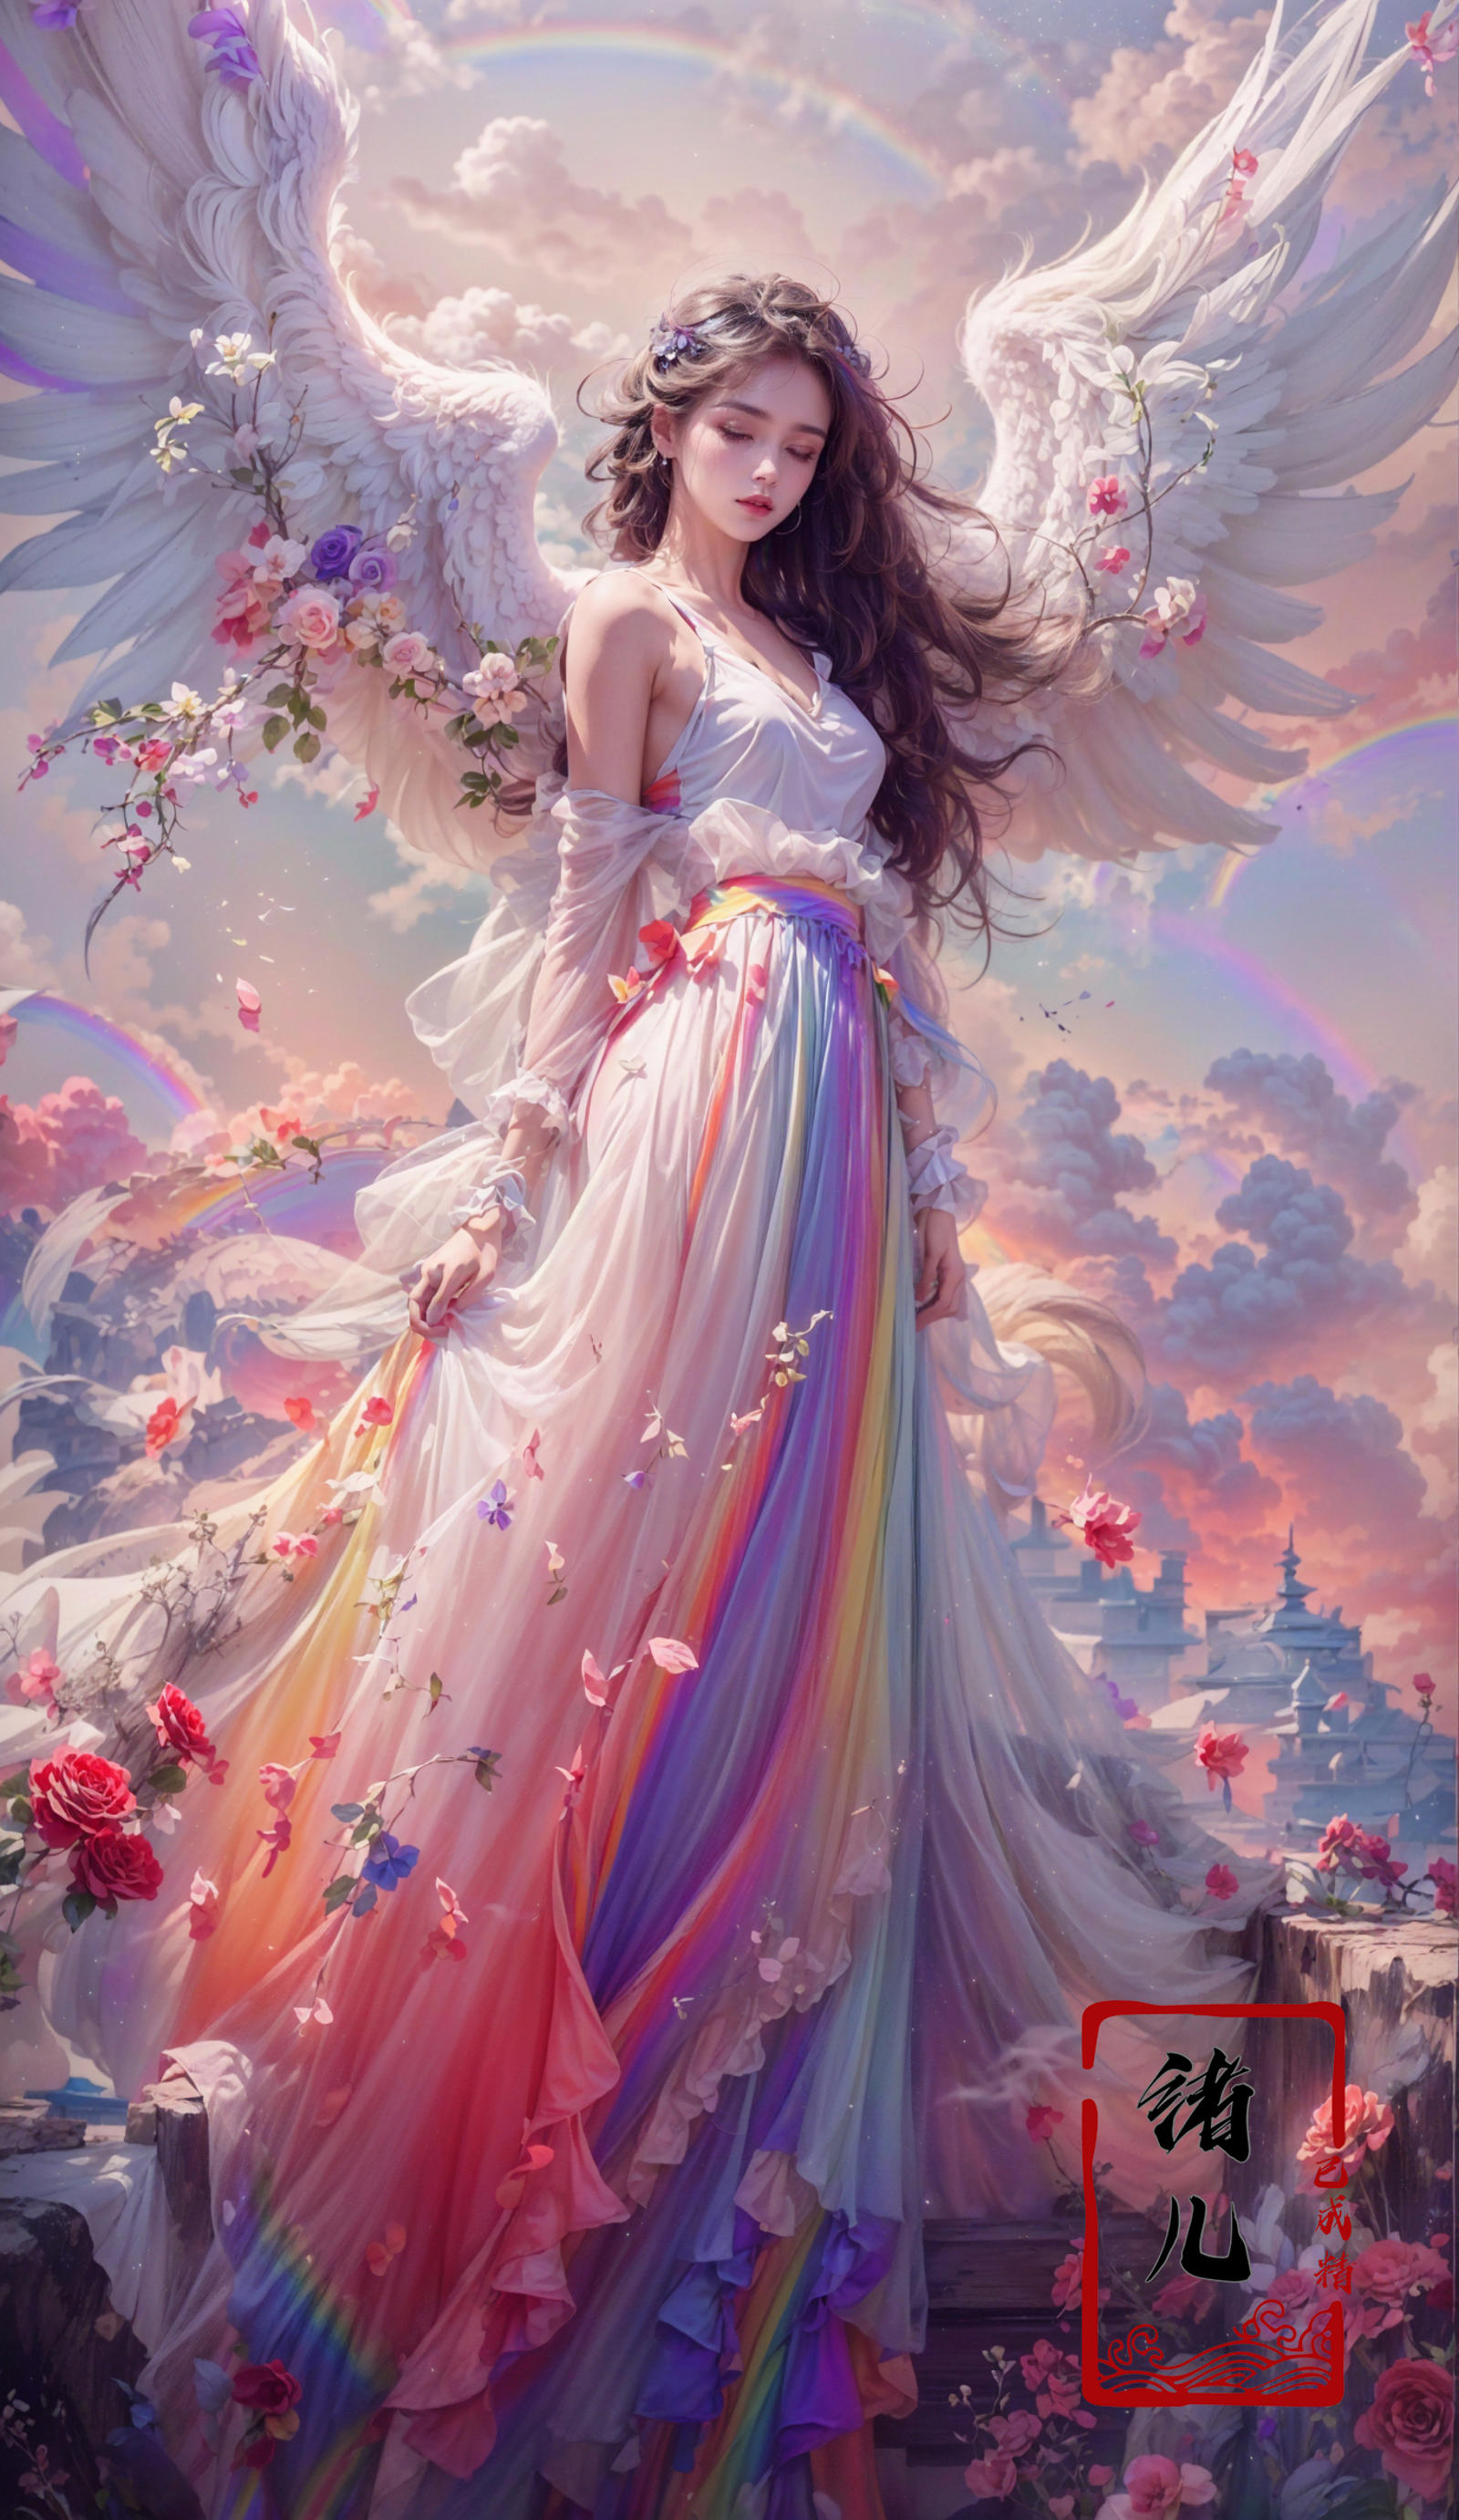 绪儿-绝美彩虹天使 beautiful rainbow angel image by XRYCJ